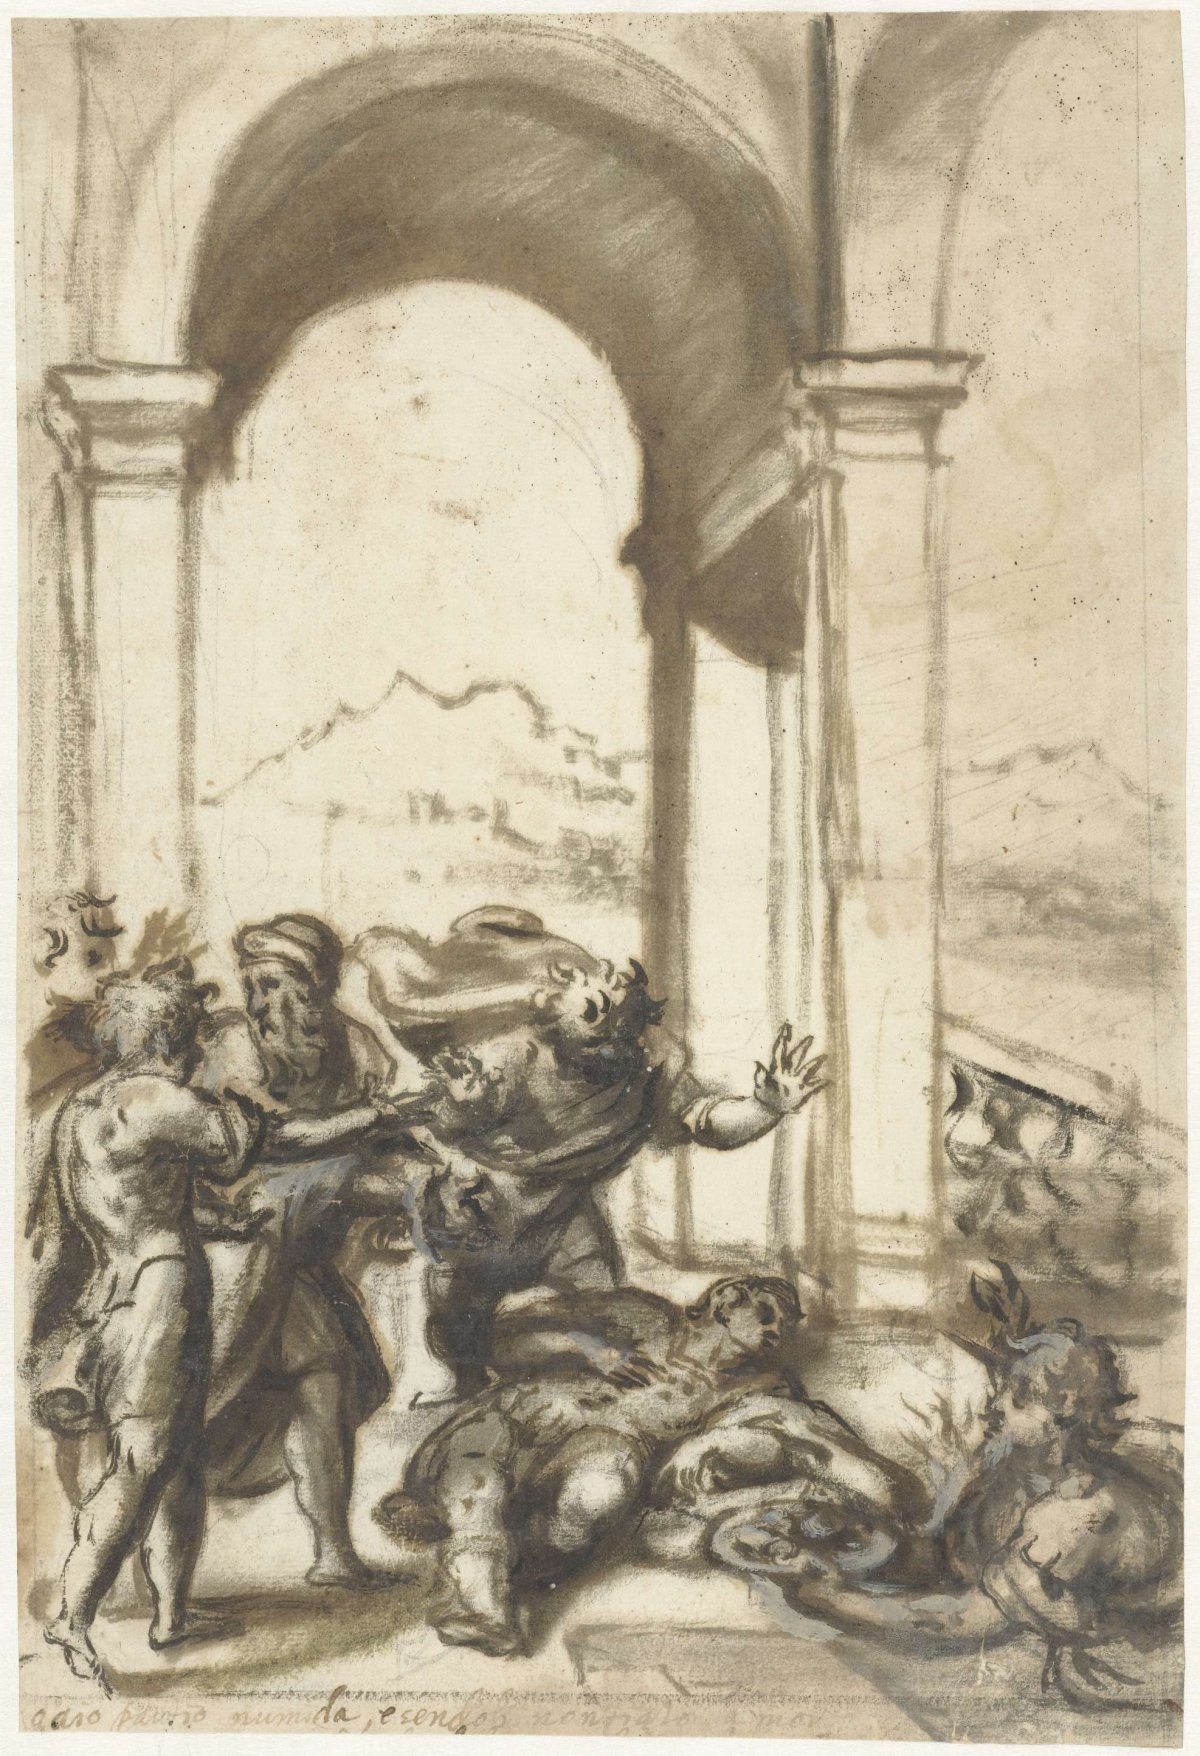 Death of Hannibal, Schiavone, 1510 - 1563